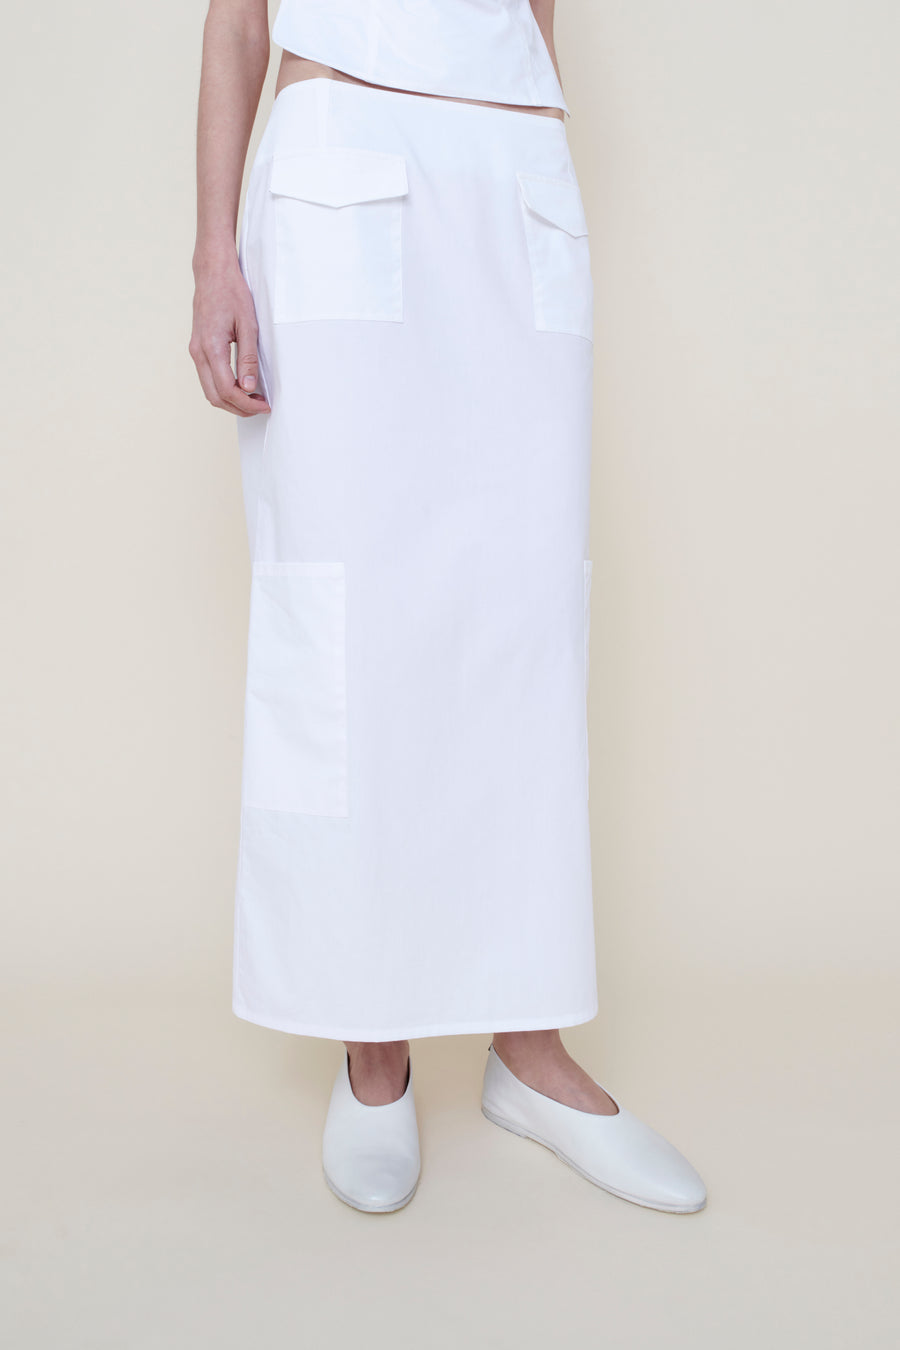 The Valletta Skirt in White Poplin